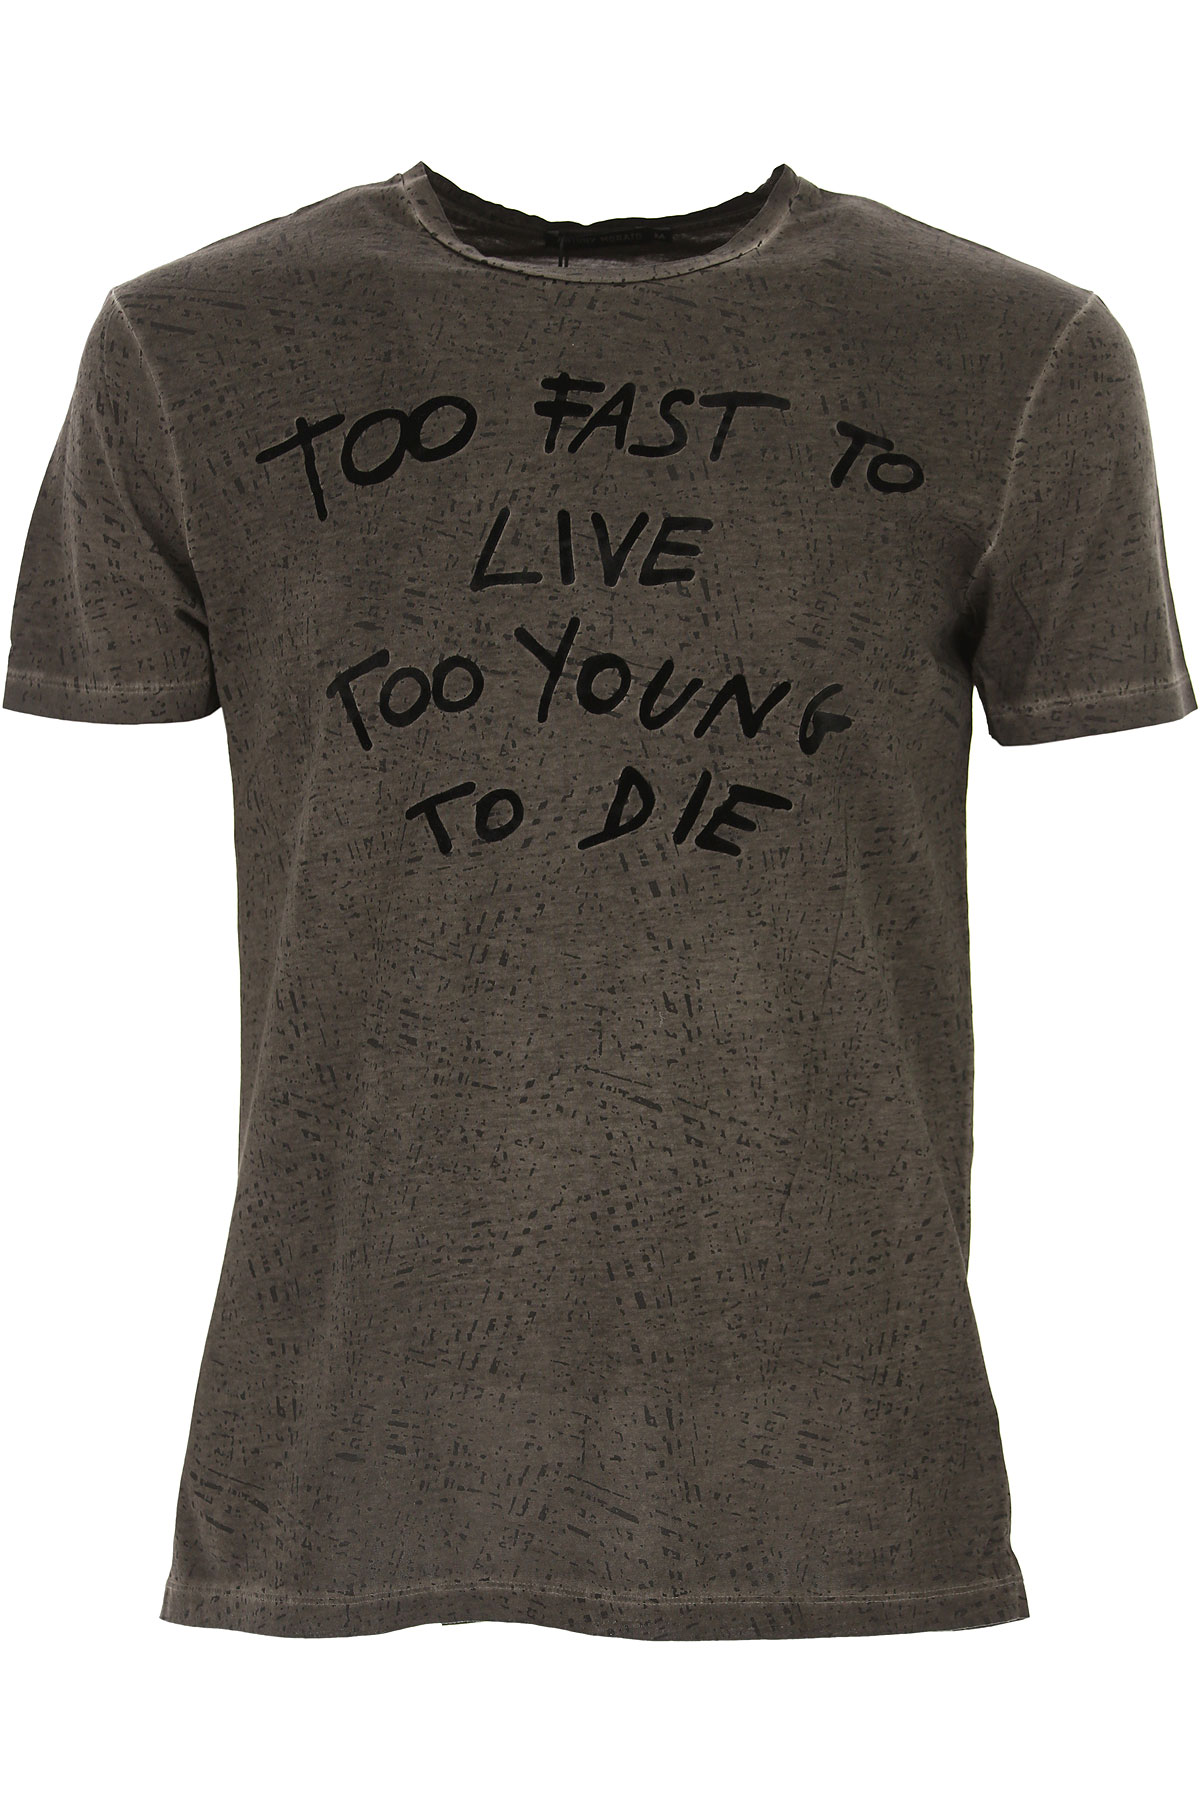 Antony Morato T-shirt Homme Outlet, Noir vintage, Coton, 2017, S XL